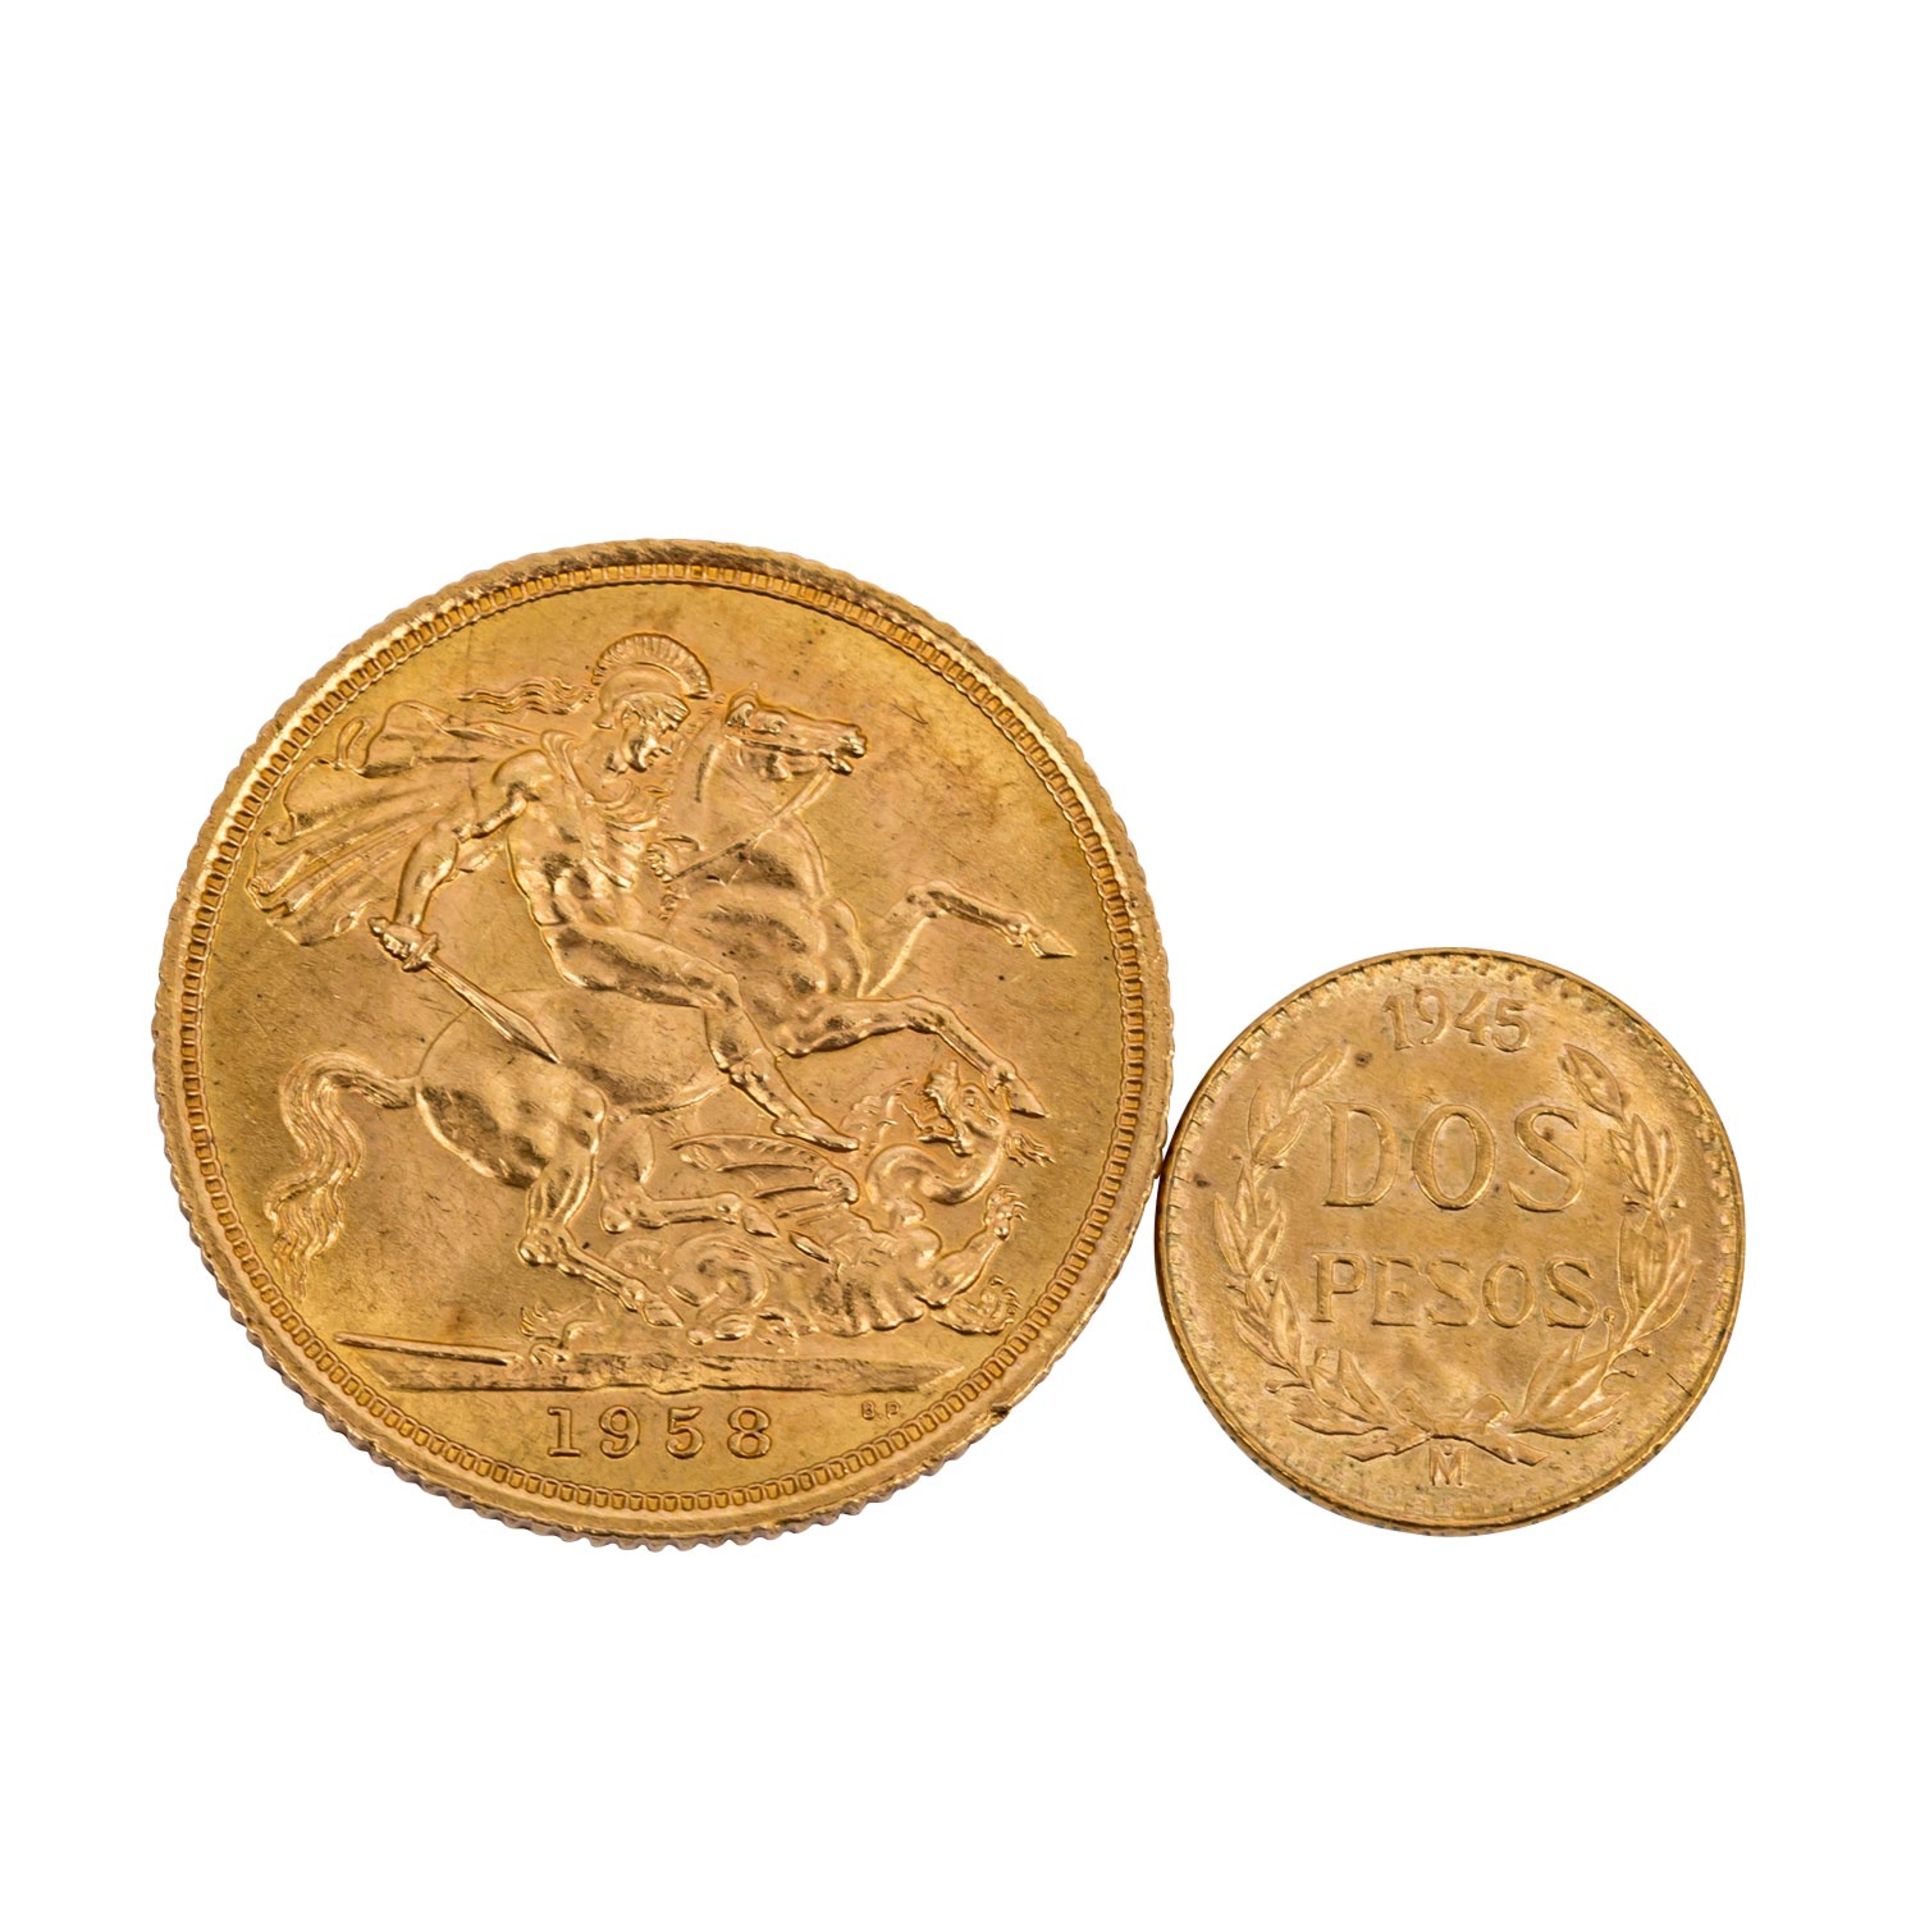 GB/Mexiko/GOLD - Konvolut: 1 Sovereign 1958Elisabeth II. und Mexiko 2 Pesos 1945 NP. Ca. 8,8 g fein. - Bild 2 aus 2